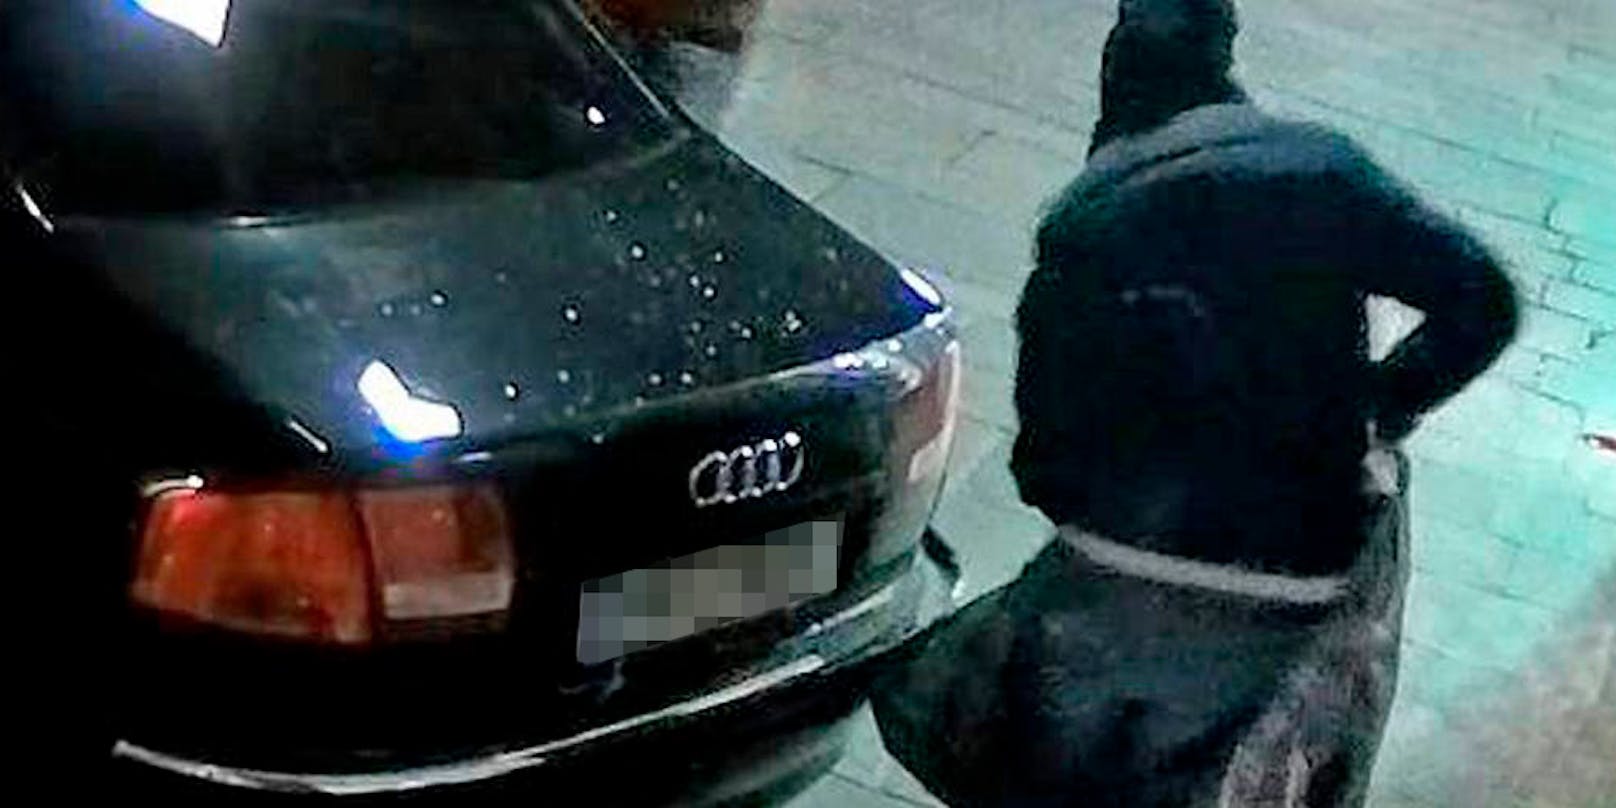 Die Einbrecher fuhren mit einem schwarzen Audi A6, an dessen Kofferraum eine Holzramme montiert war, rückwärts gegen die Auslagenscheibe beziehungsweise Türe des Geschäftes.